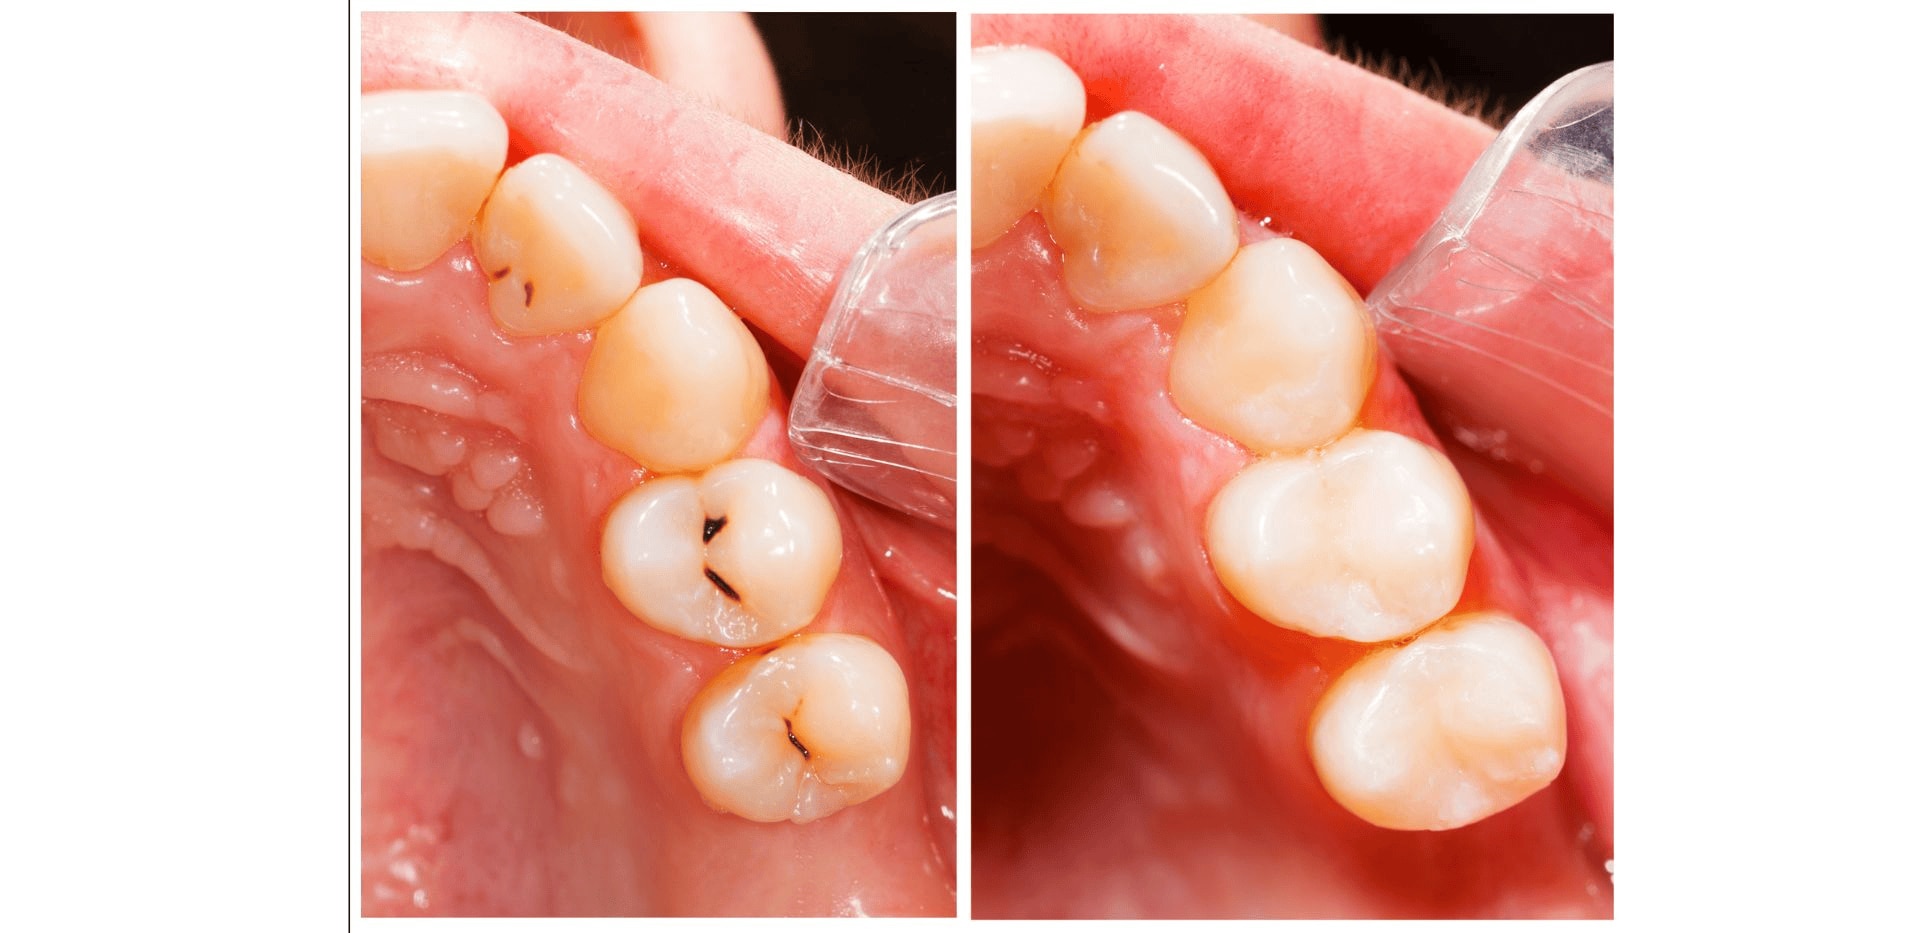 Srovnání stavu před a po čištění zubů, odstranění plaku.